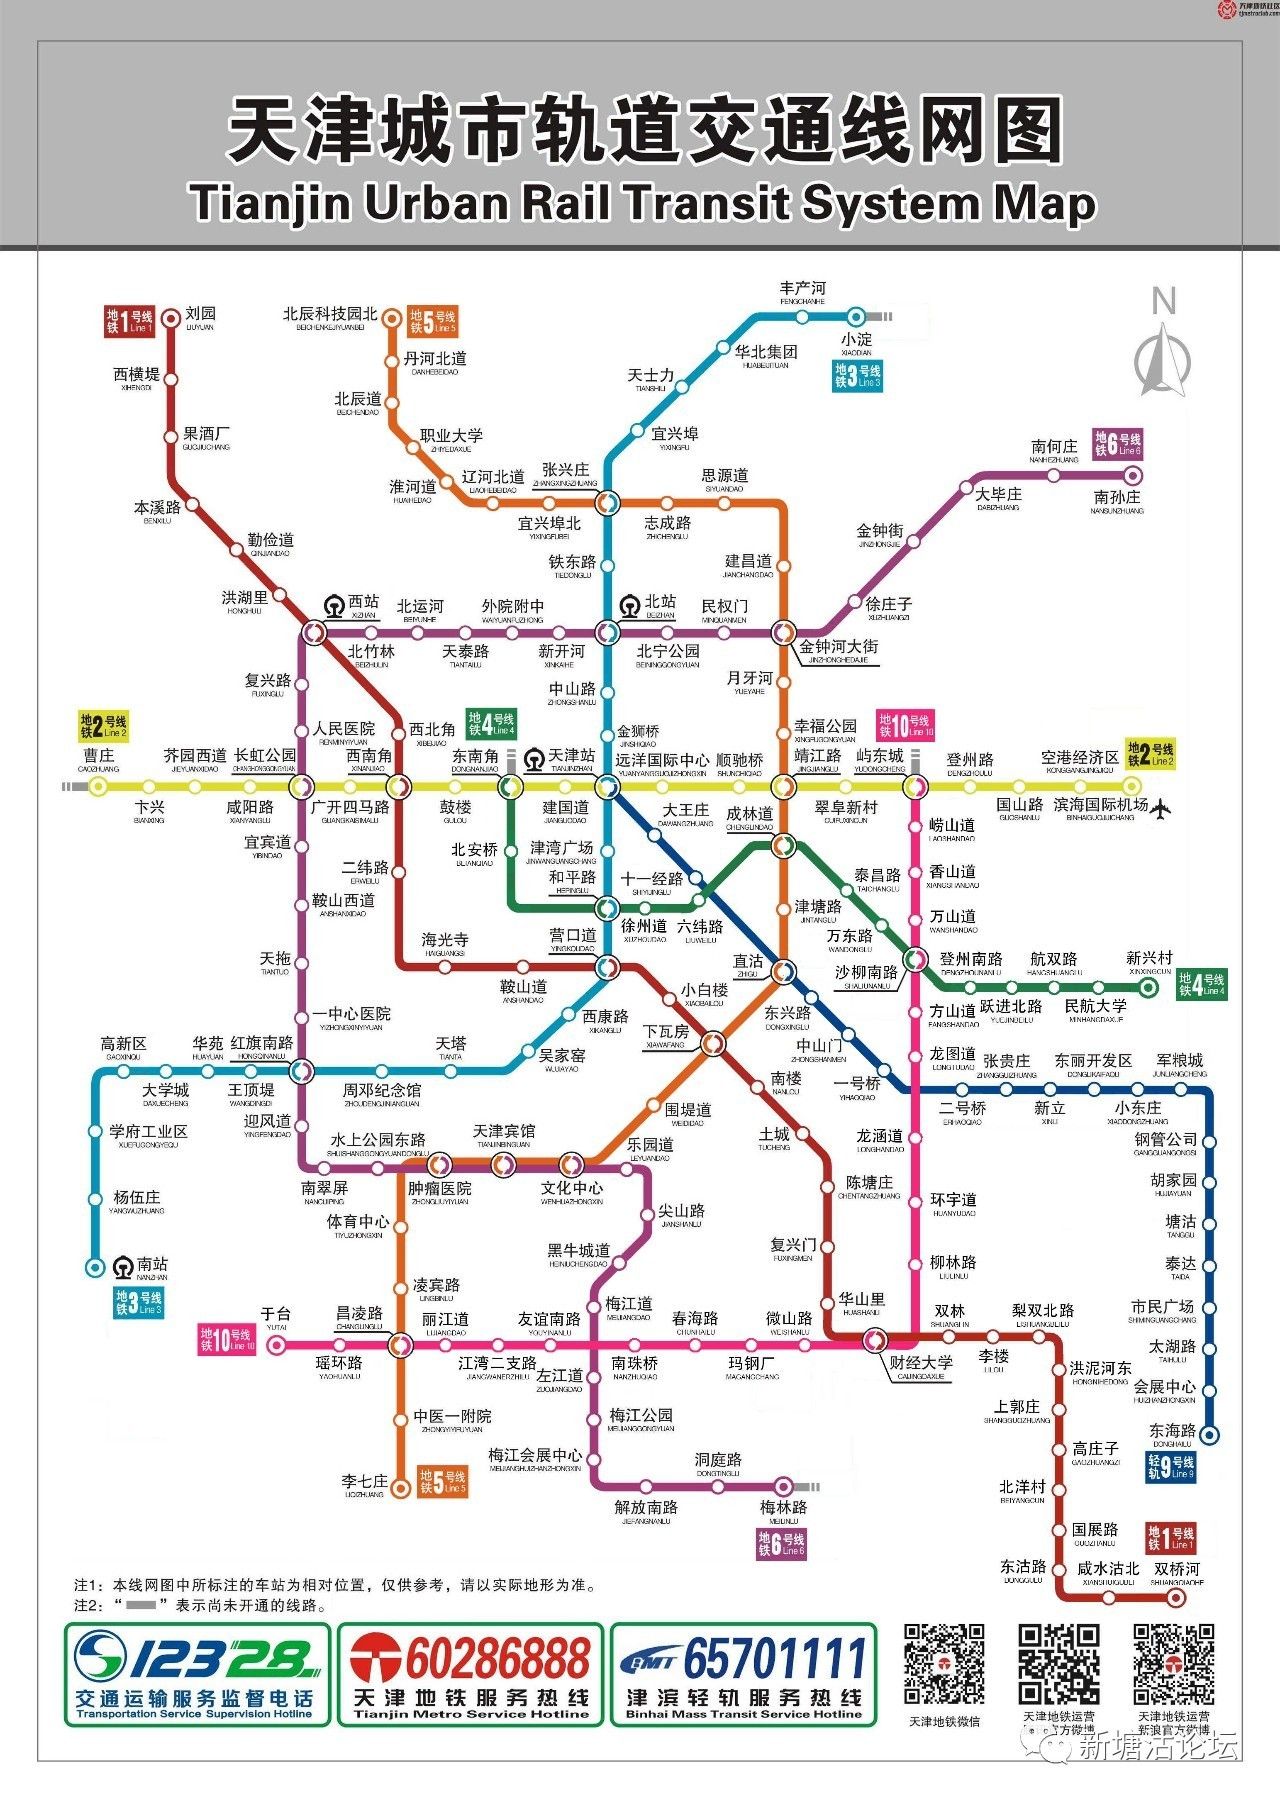 塘沽b1地铁线路图图片